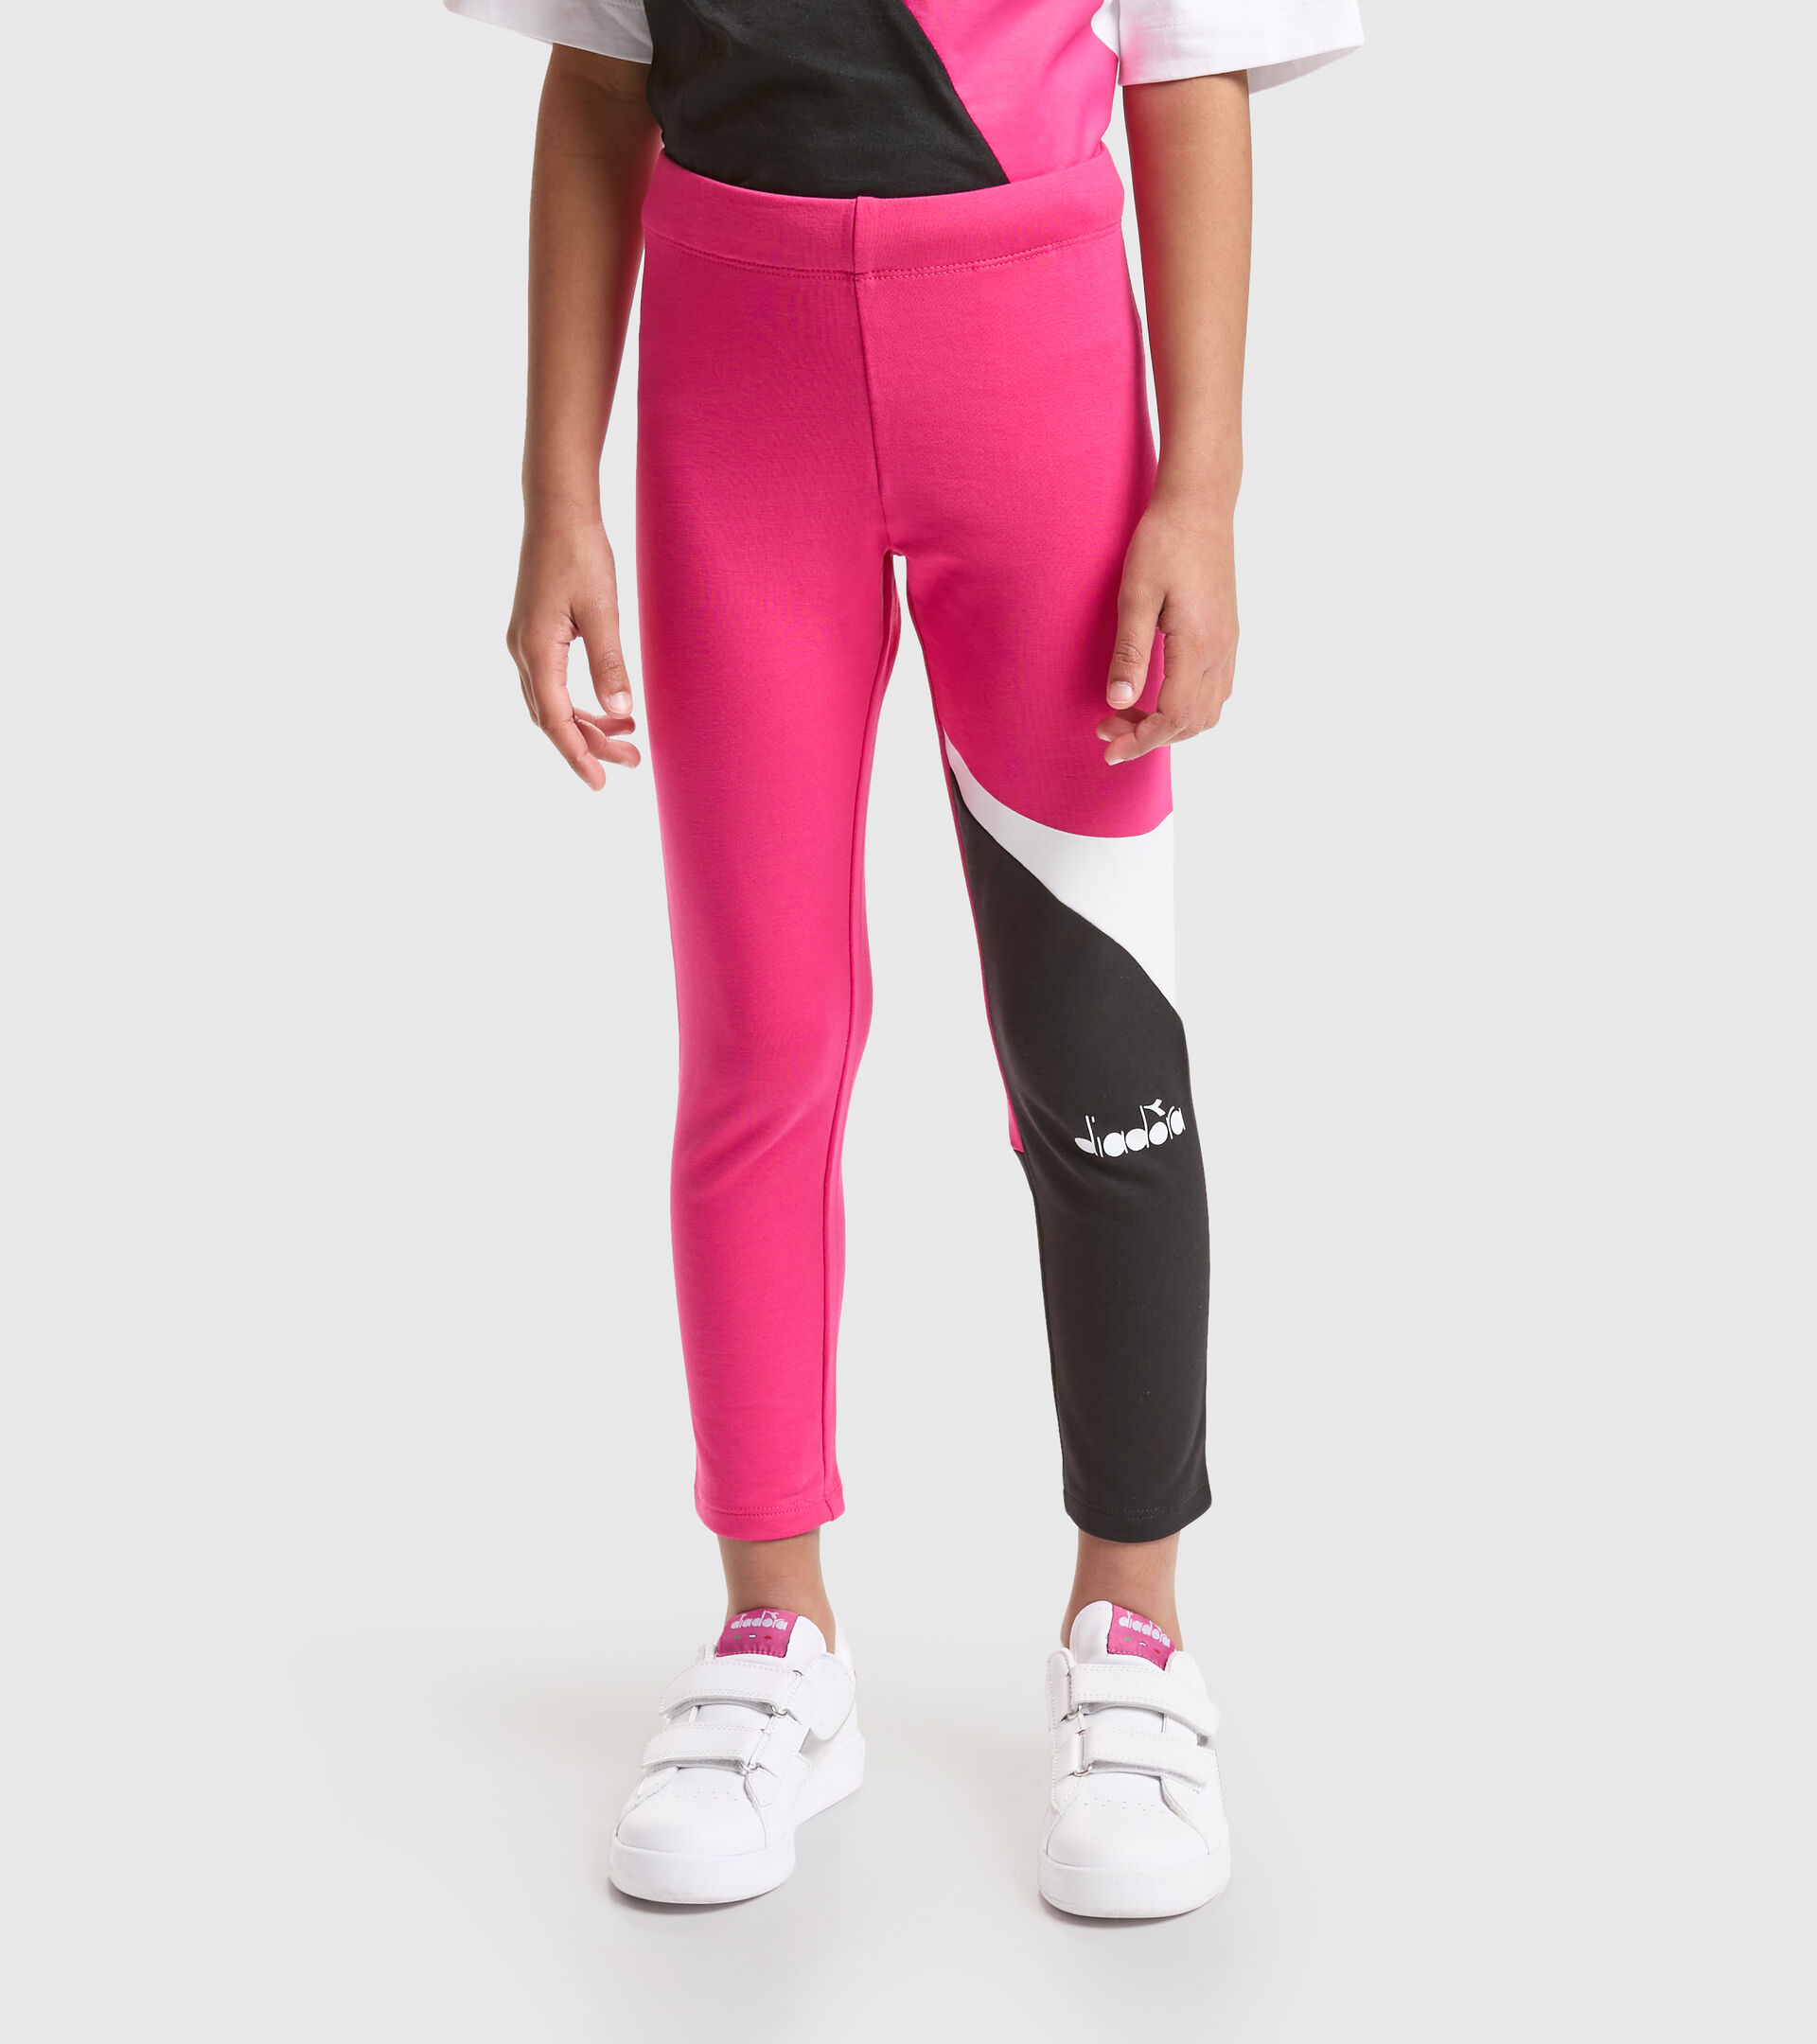 Girls' sports leggings